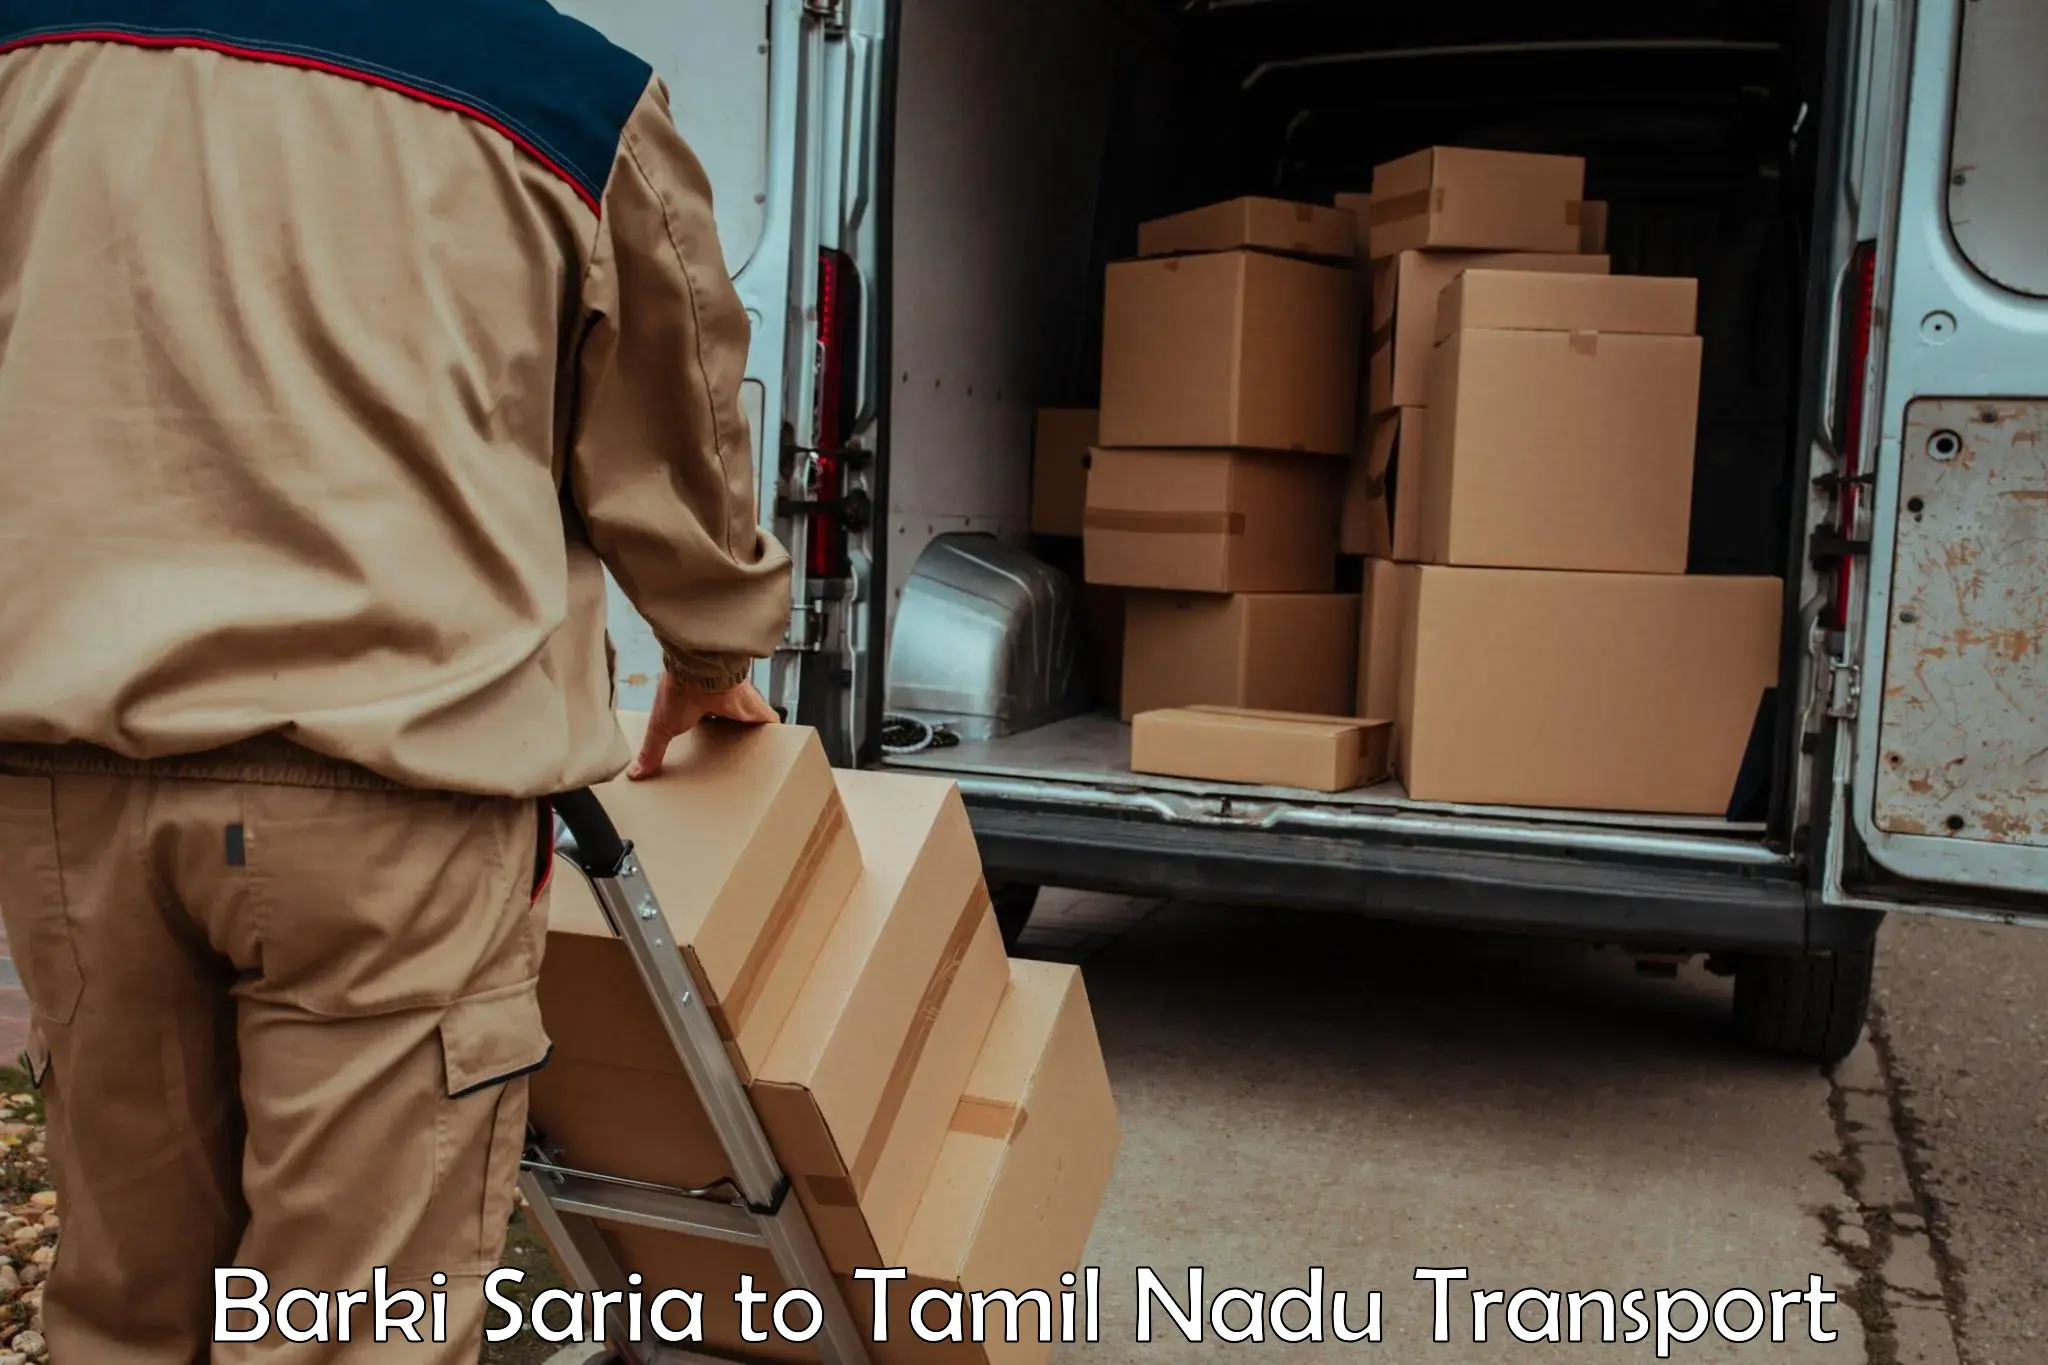 Bike shipping service Barki Saria to Anna University Chennai